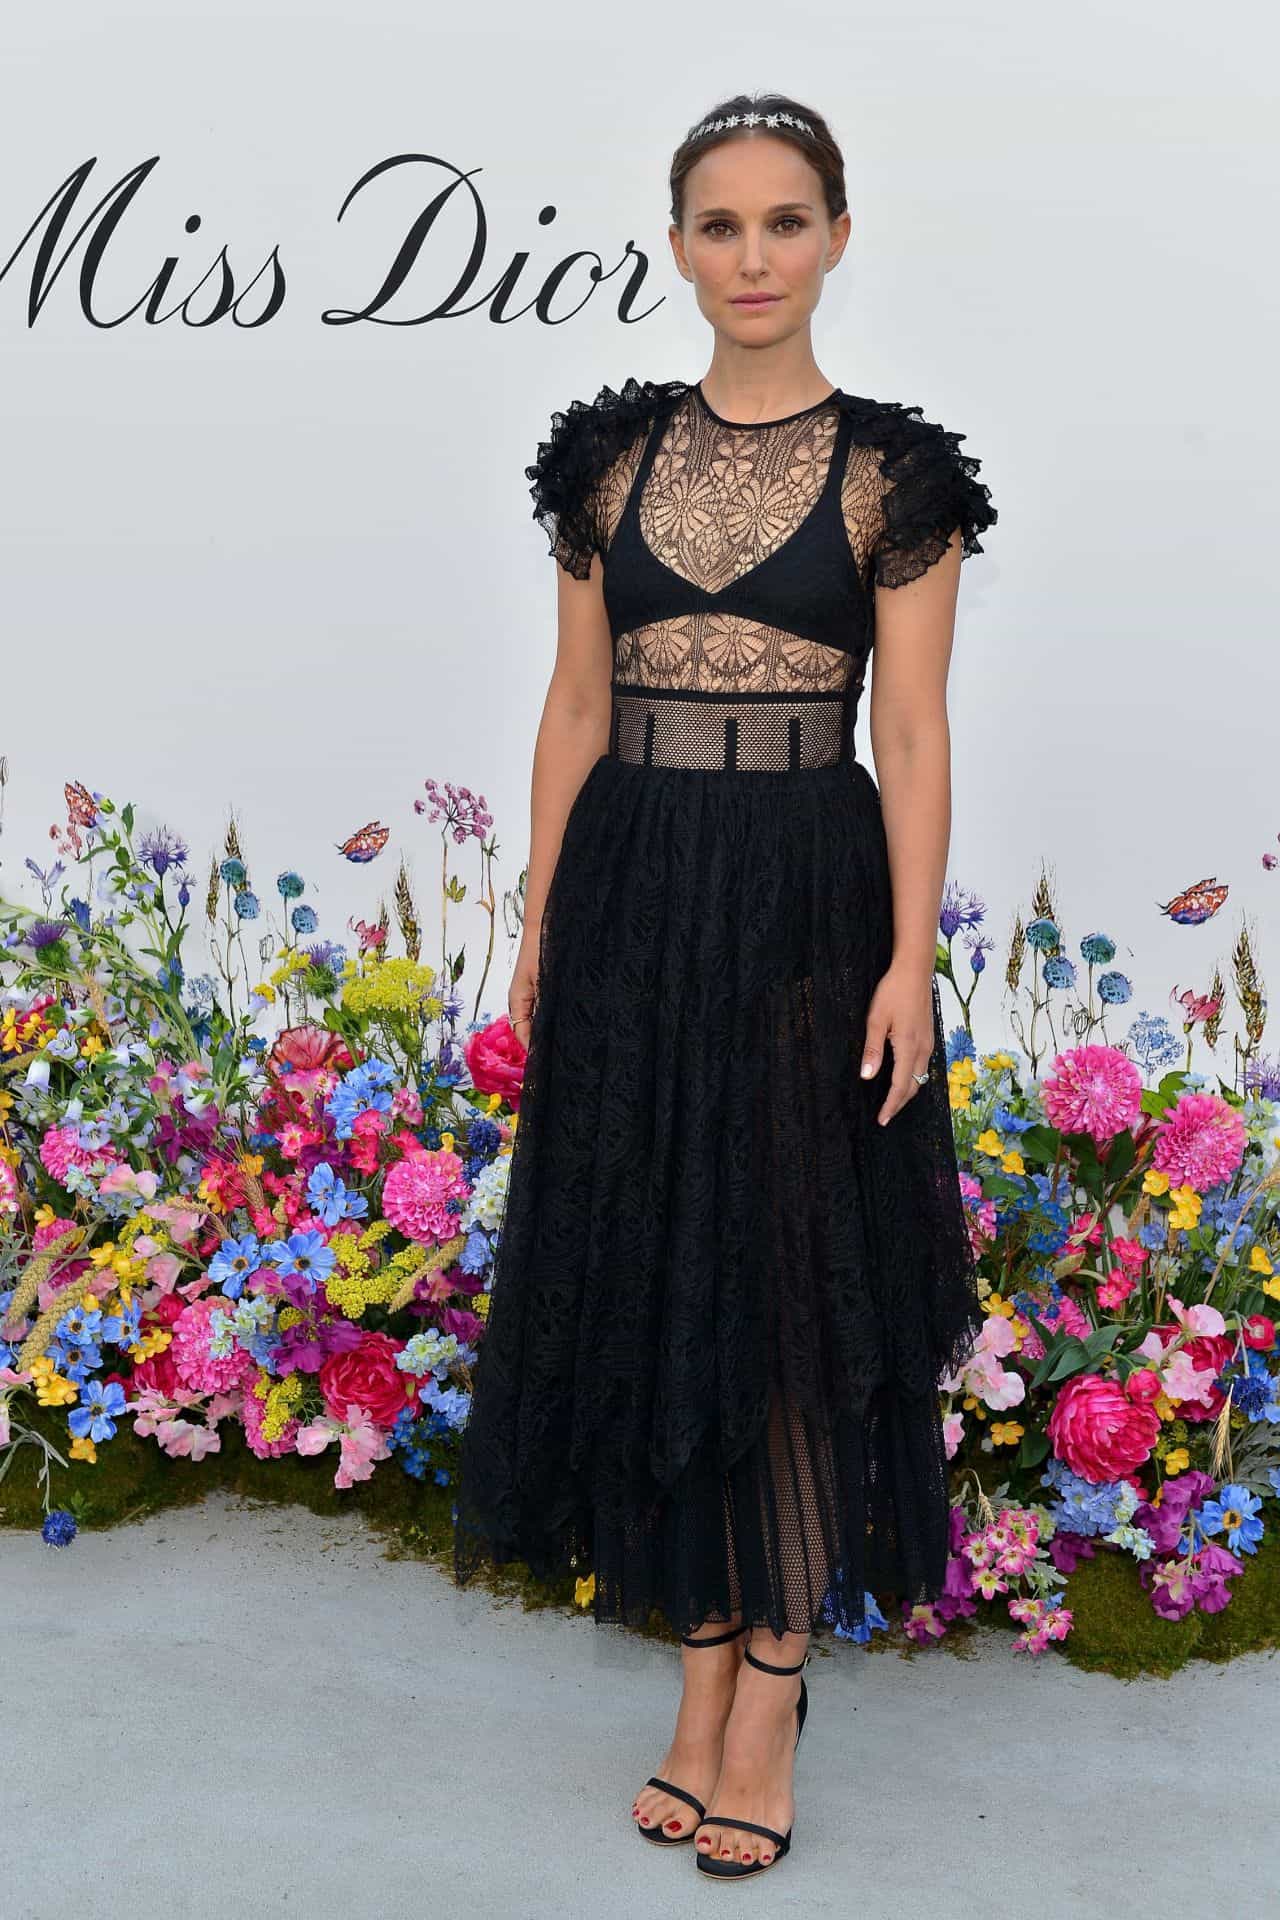 Natalie Portman Shines in Black at the Miss Dior Millefiori Garden Pop-Up